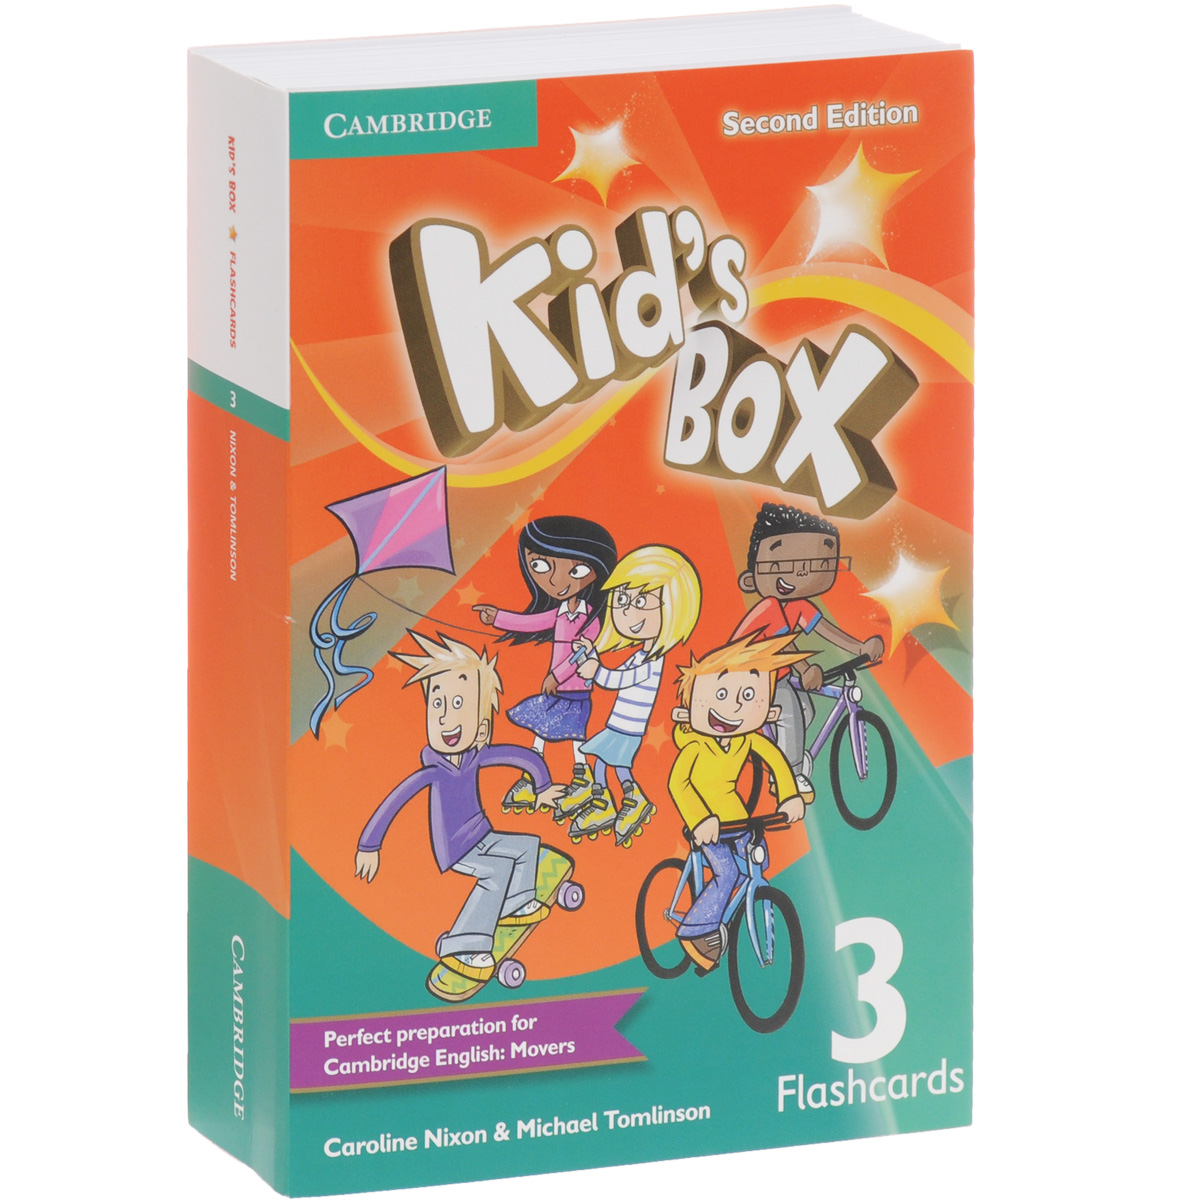 Kid's Box 3: Flashcards